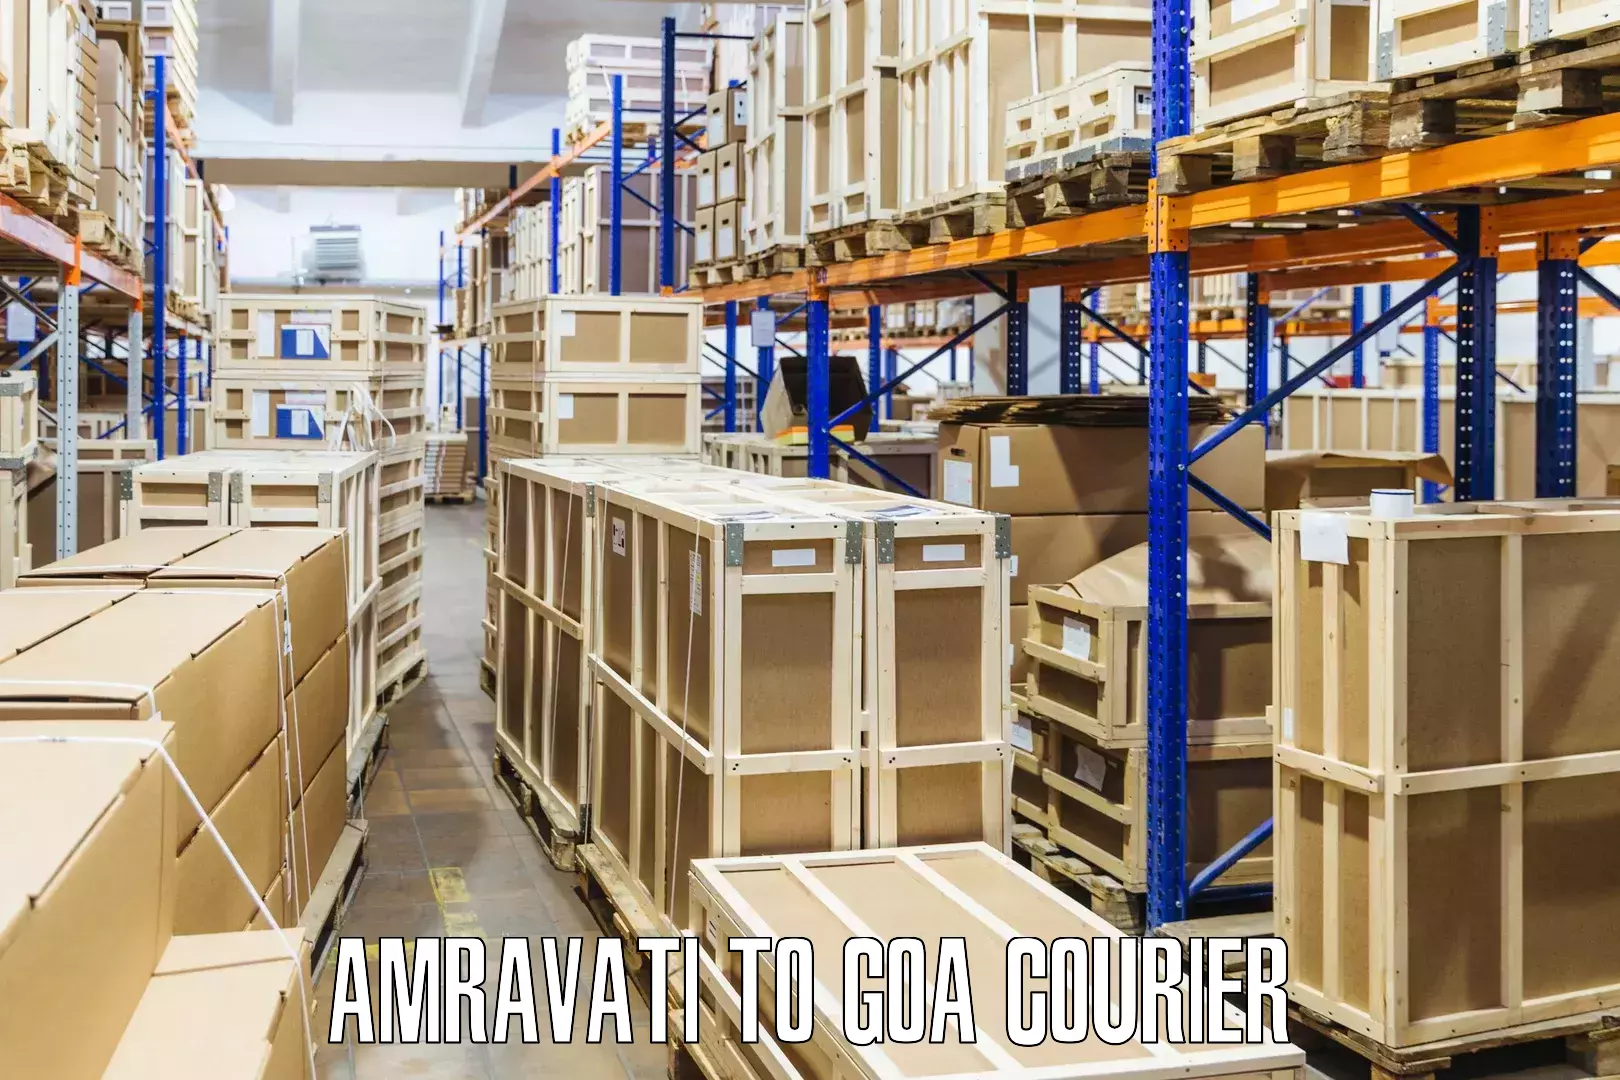 High-priority parcel service in Amravati to Panaji